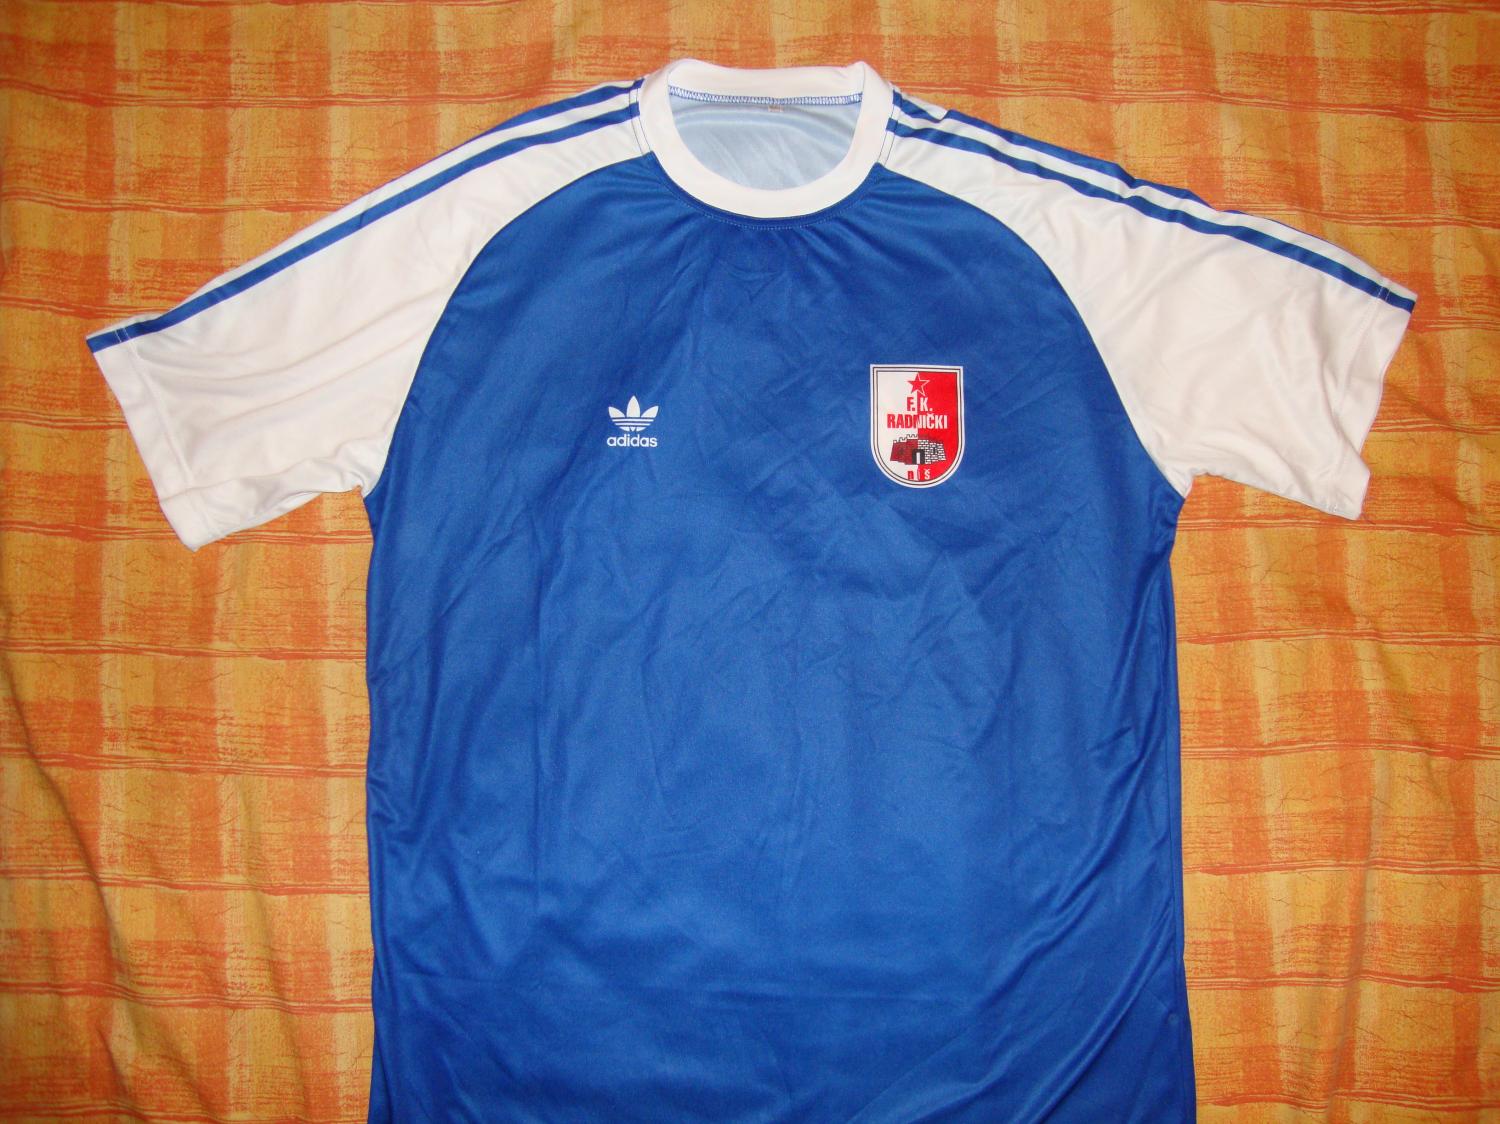 FK Radnički Niš Home football shirt 1982 - 1984.